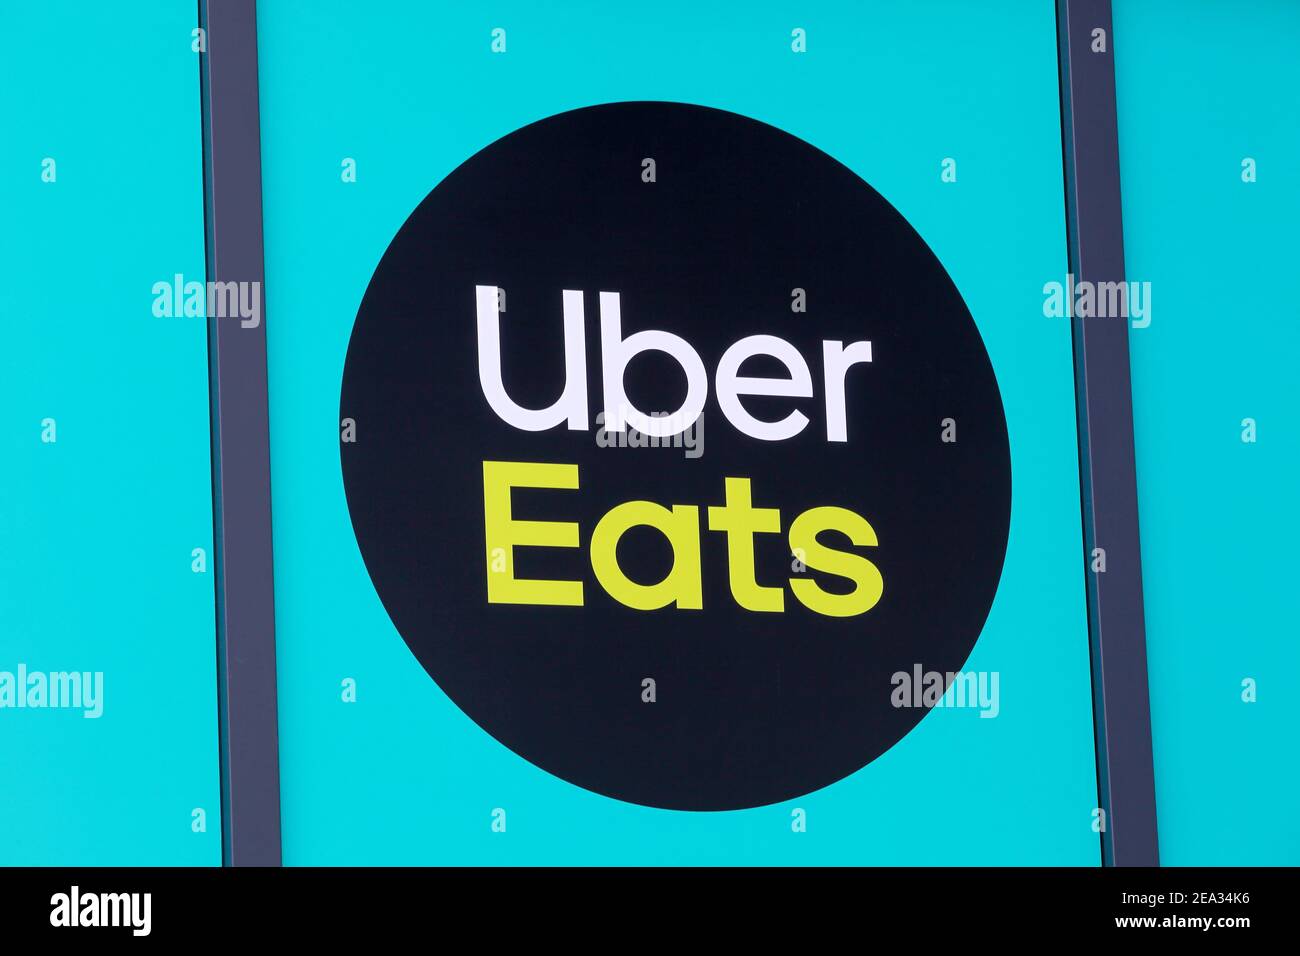 Villefranche, France - 24 mai 2020 : Uber Eats est une plateforme américaine de commande et de livraison de produits alimentaires en ligne lancée par Uber en 2014 Banque D'Images